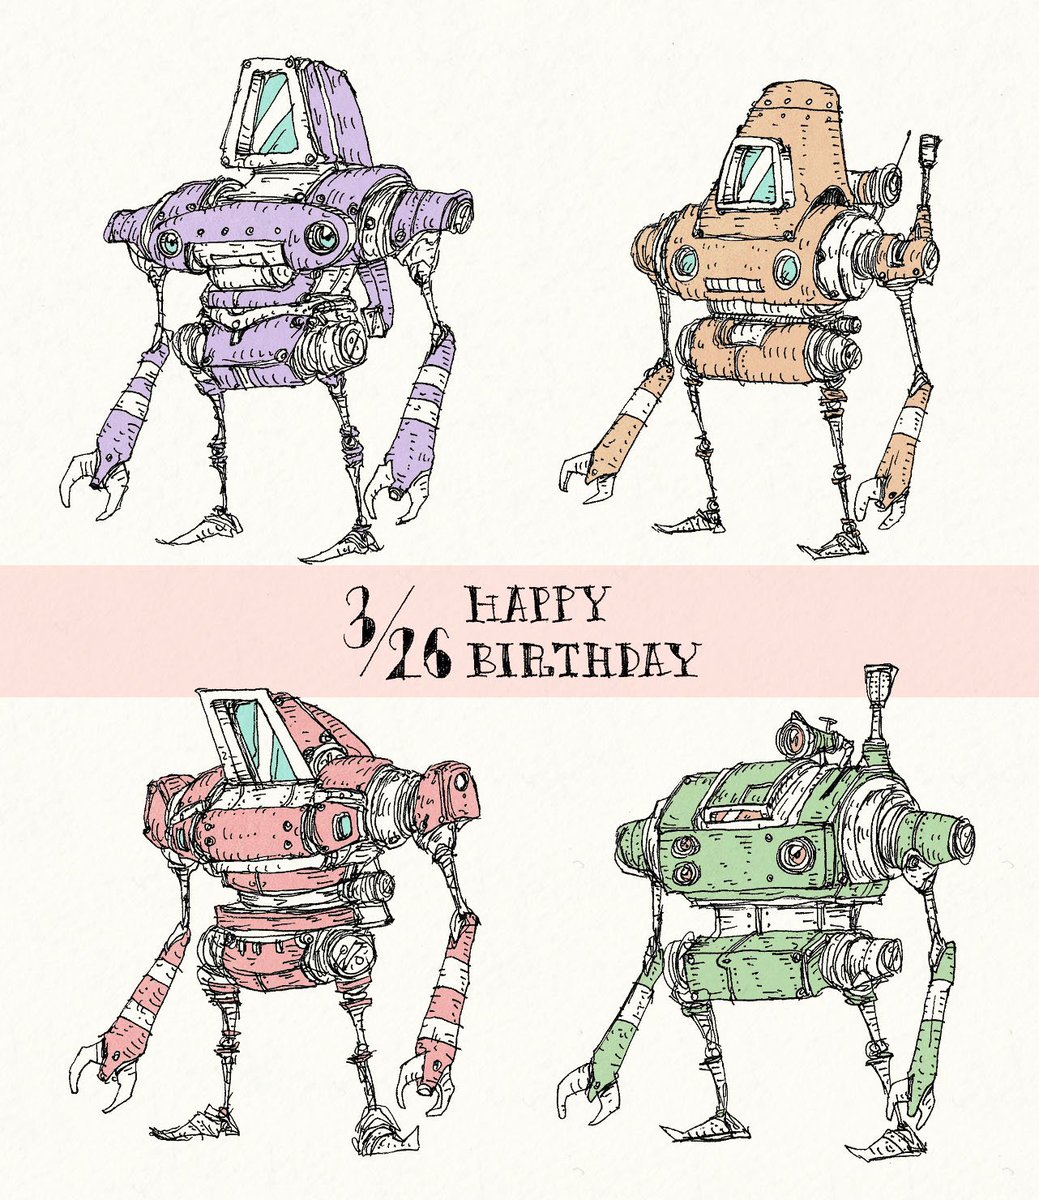 今日も誰かの誕生日。3/26生まれの方、お誕生日おめでとうございます。「ロボットカタログ」
3/26は画家・天野喜孝さんのお誕生日でもあるんですね。FFシリーズがとても有名ですが、タイムボカンシリーズ等のキャラクターデザインもされてますね。
#誕生日 #drawing #イラスト 